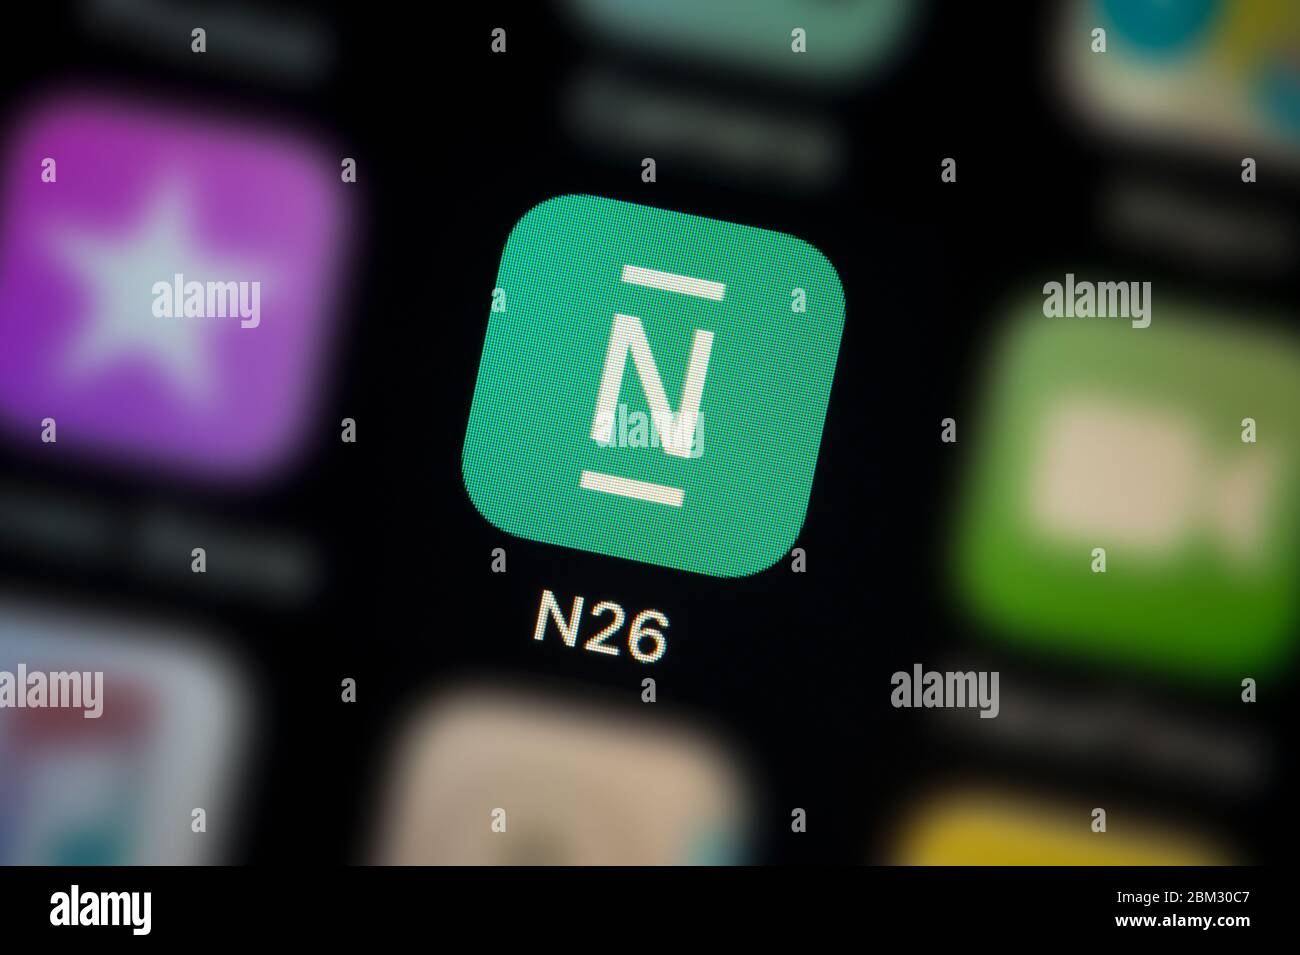 Nahaufnahme des N26 Bank App-Symbols, wie auf dem Bildschirm eines Smartphones zu sehen (nur für redaktionelle Verwendung) Stockfoto